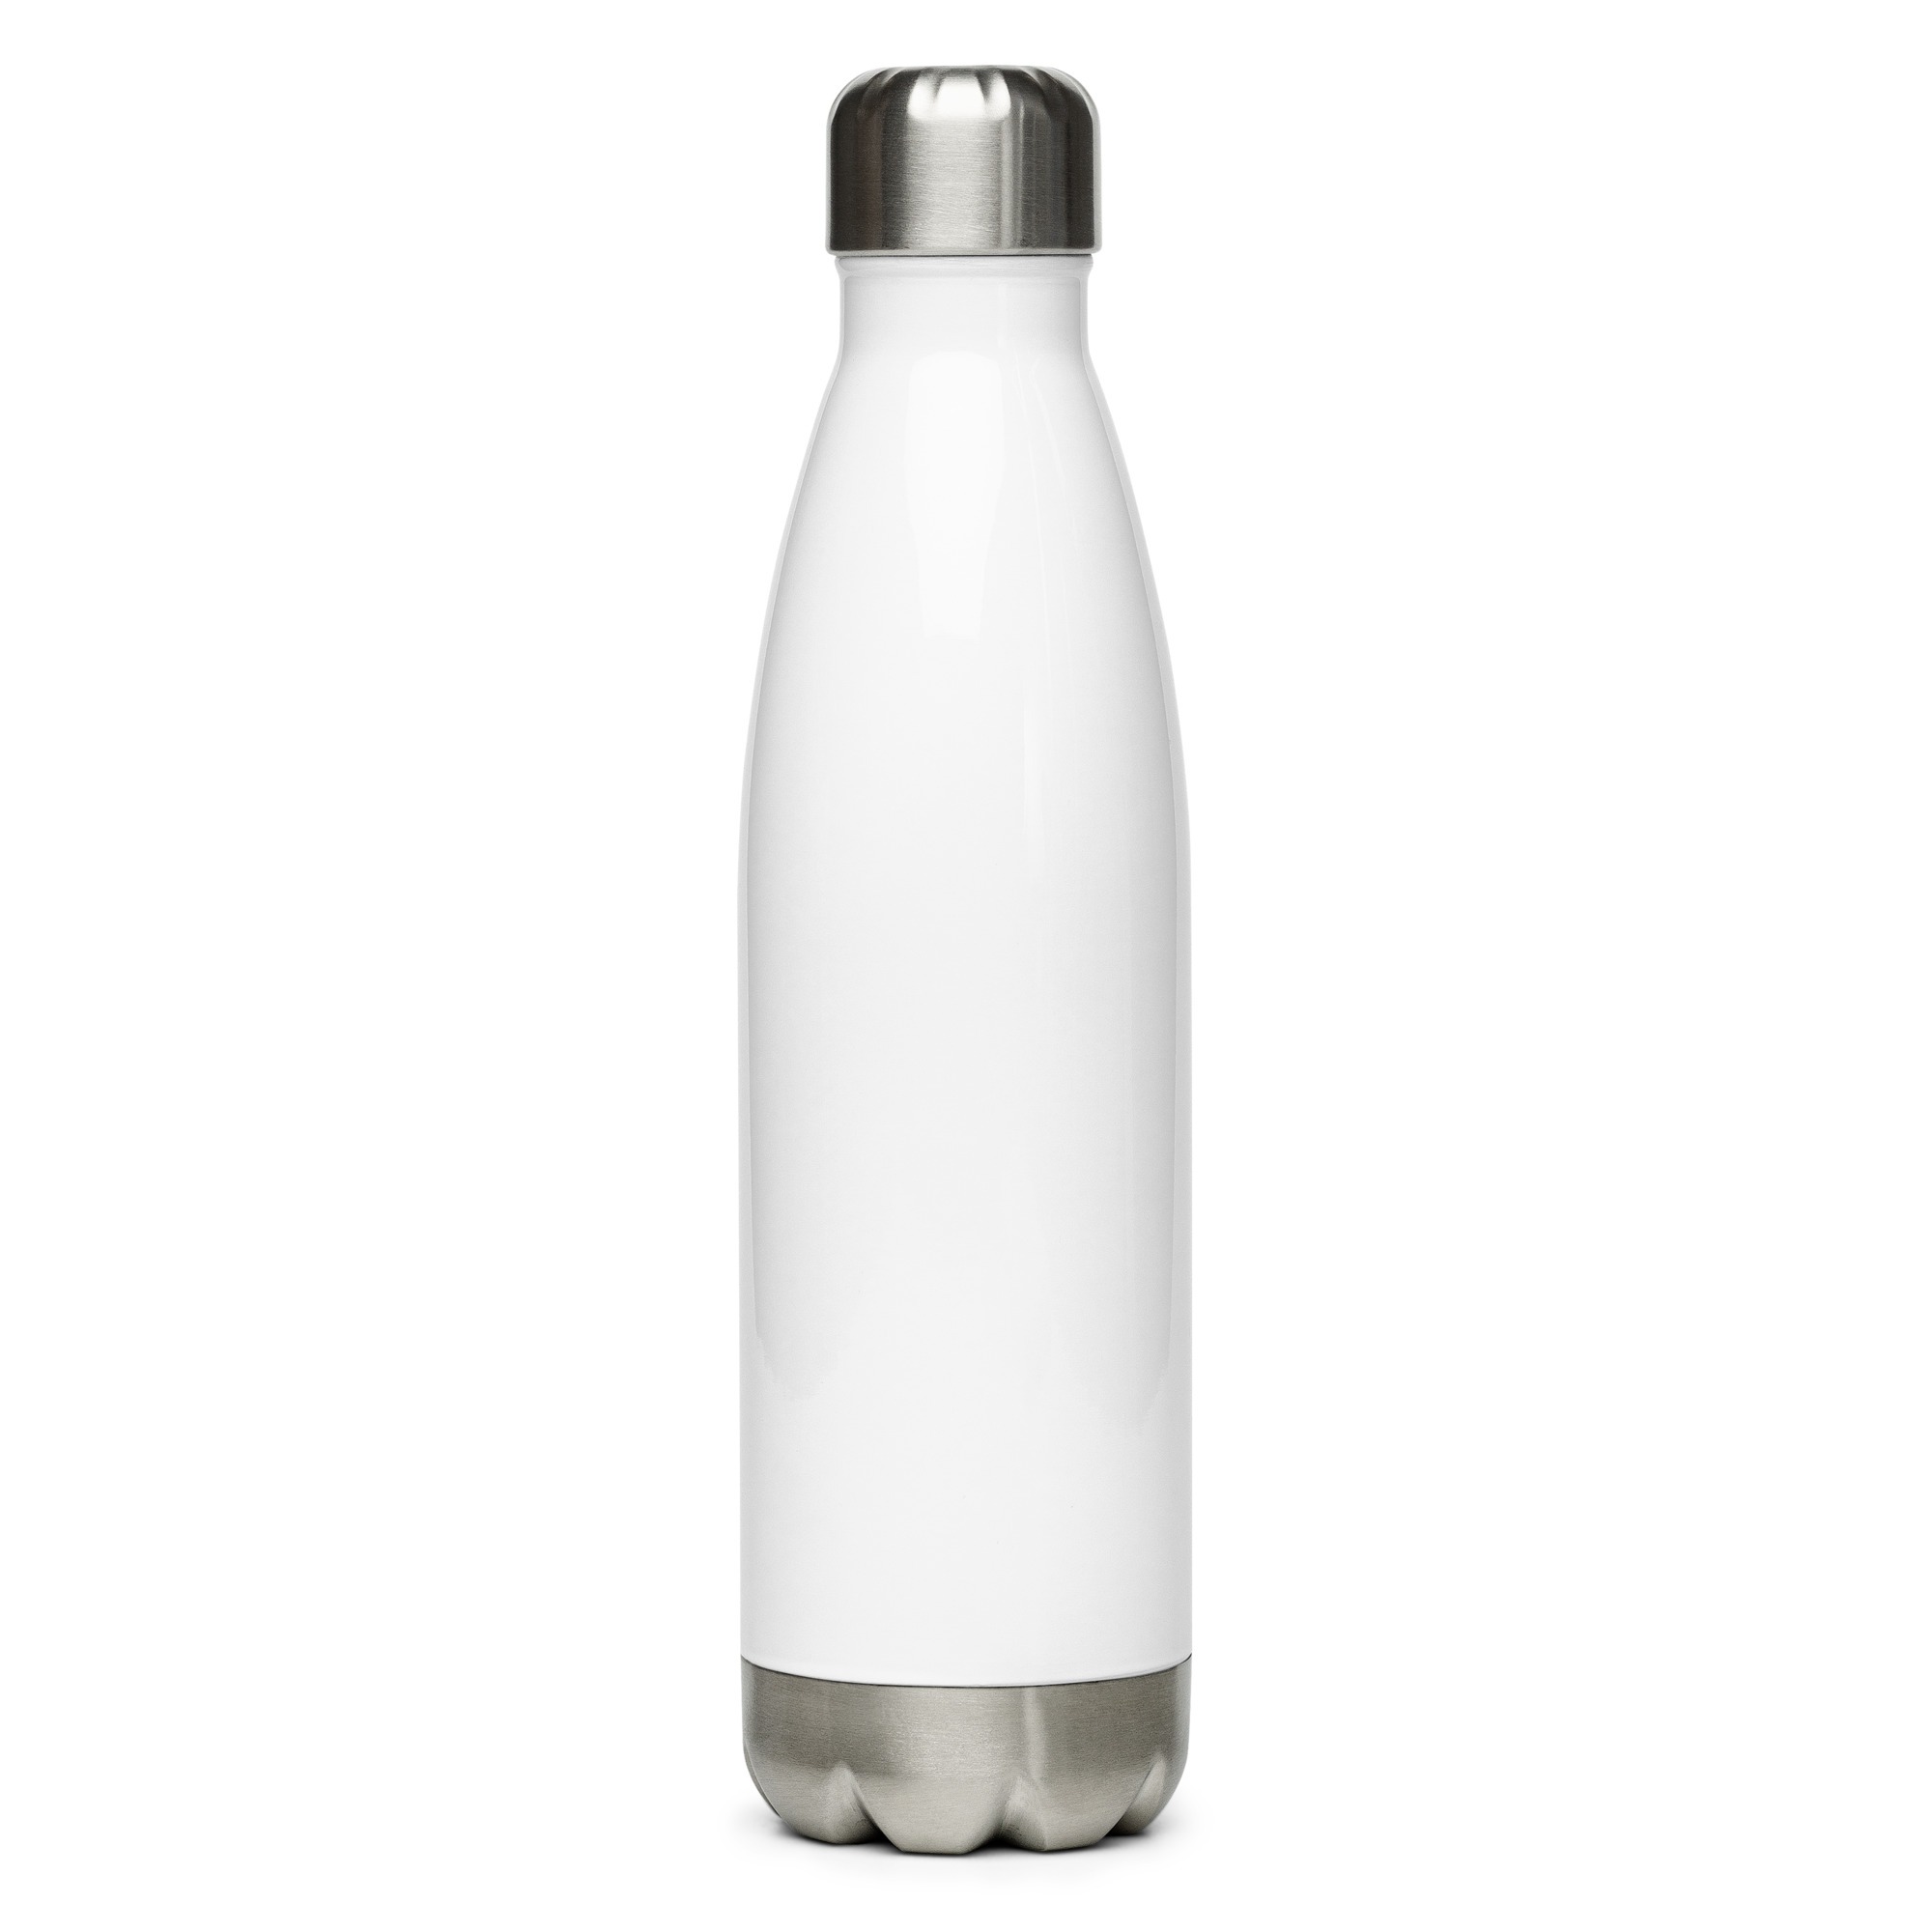 https://www.astepaheadchattanooga.org/wp-content/uploads/2022/06/stainless-steel-water-bottle-white-17oz-back-62ab9a33da7b8.jpg